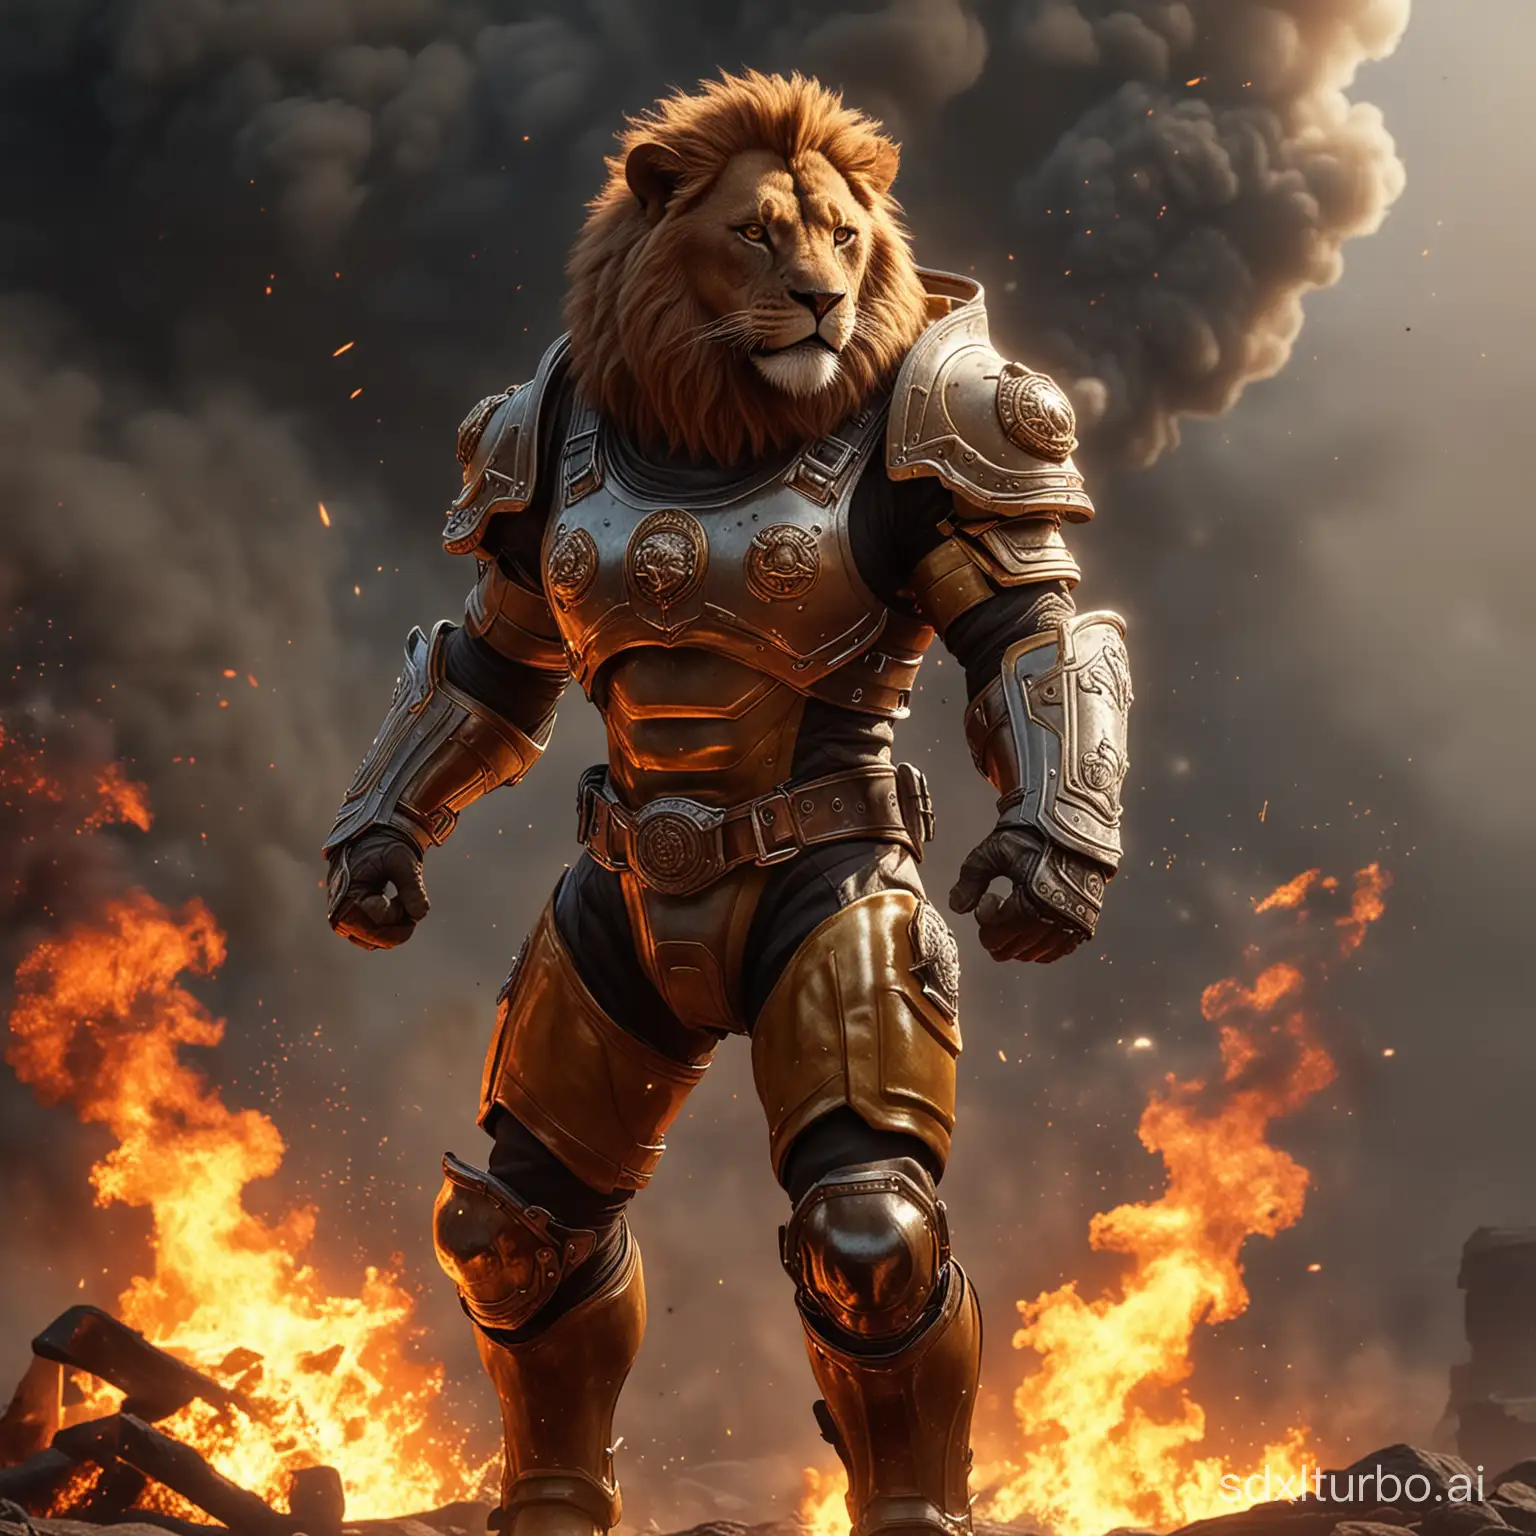 Löwe in menschlicher Form, in die Luft, muskulös, Kämpfer, Feuerwehrrüstung, 4k, fotorealistisch, filmische Beleuchtung, Feuer im Hintergrund